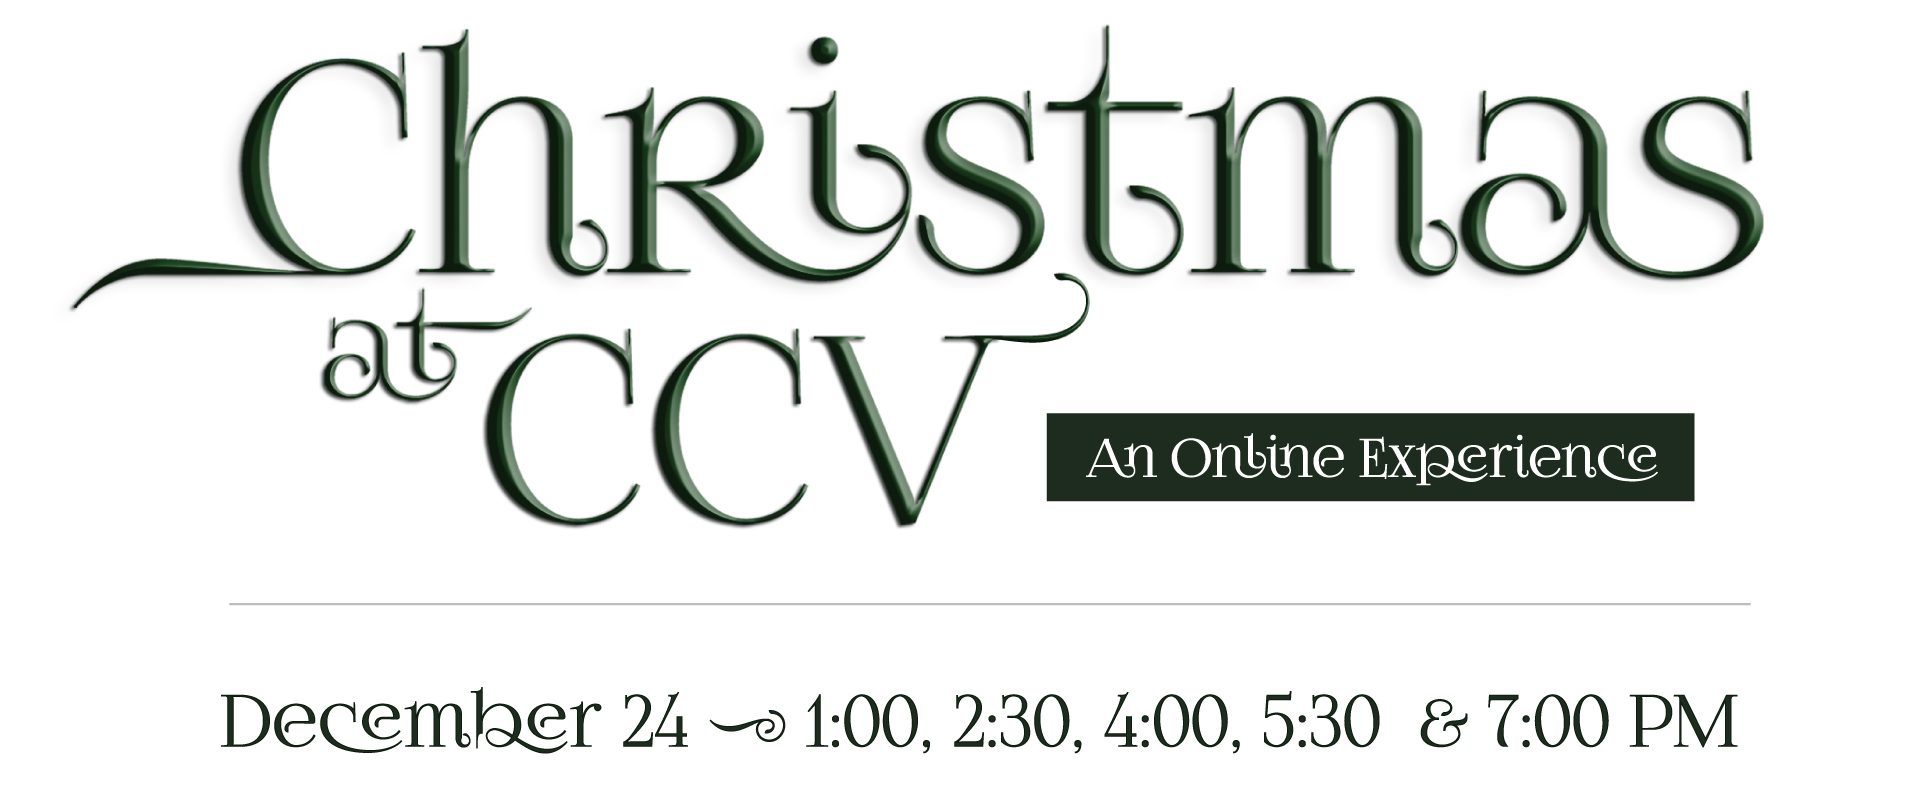 Ccv Christmas Eve Services 2021